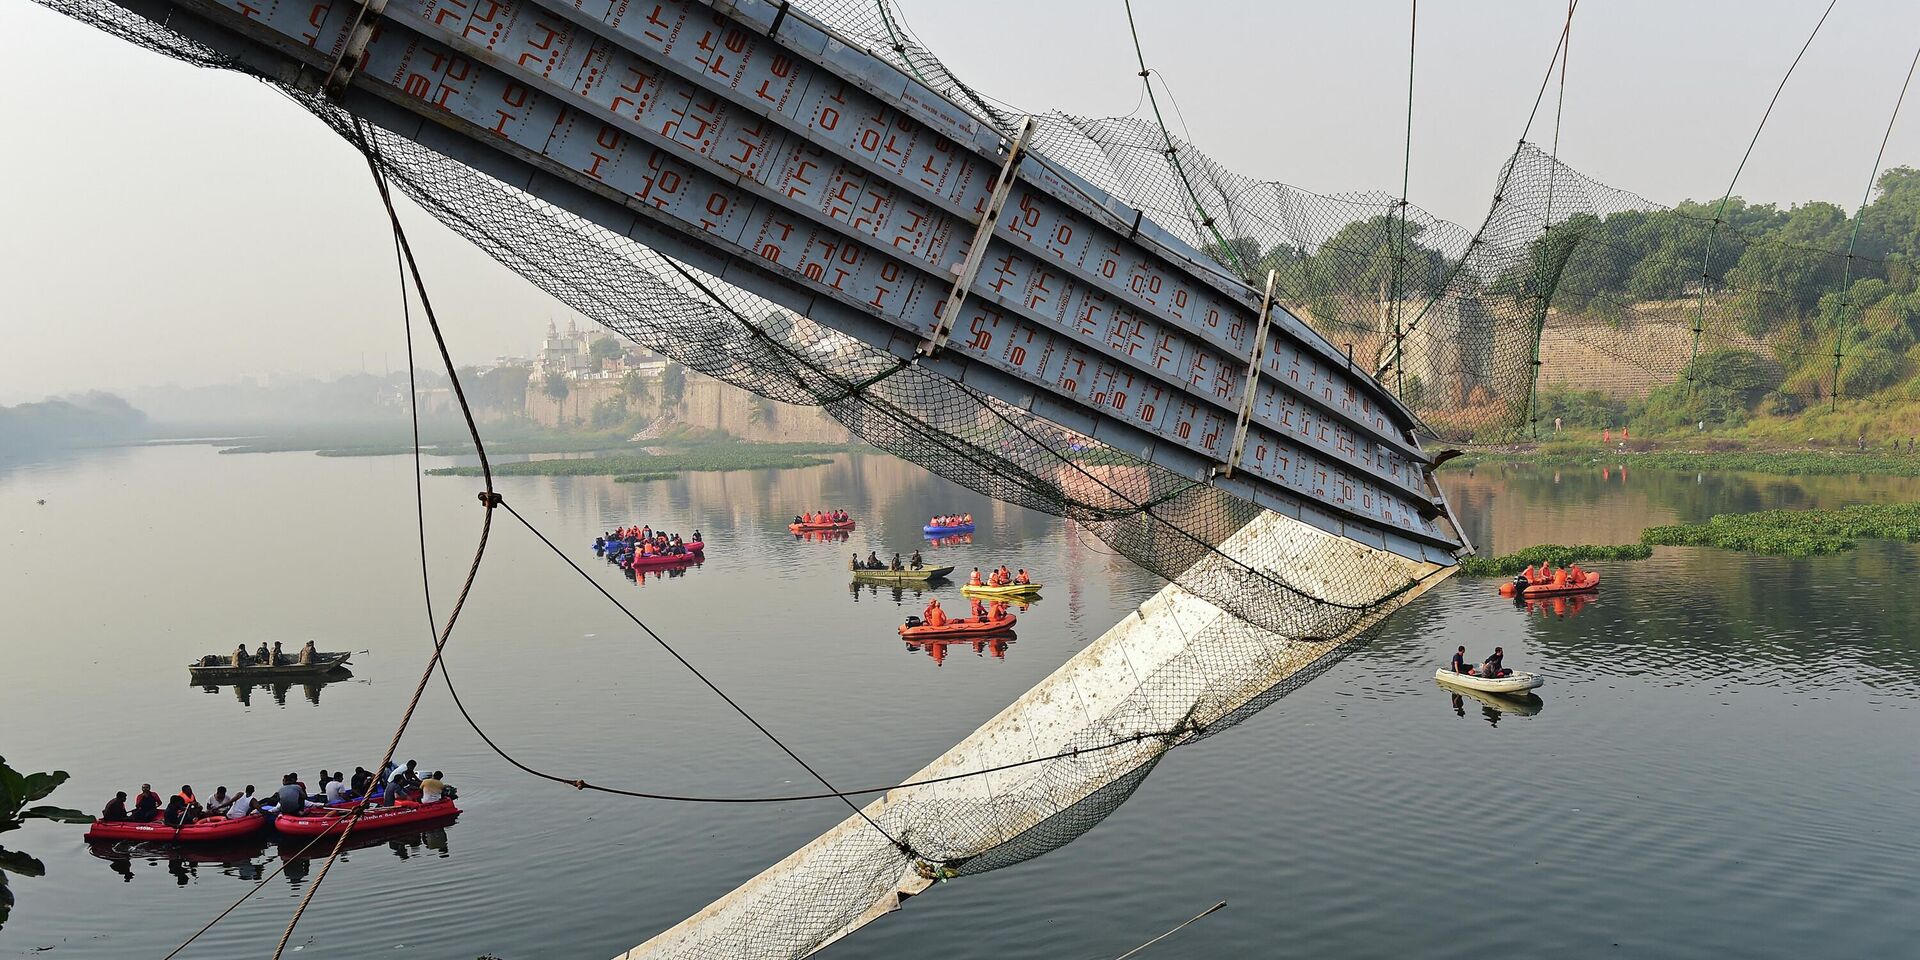 Обрушение моста через реку Маччху в Морби, Индия. 31 октября 2022 года - ИноСМИ, 1920, 30.10.2022